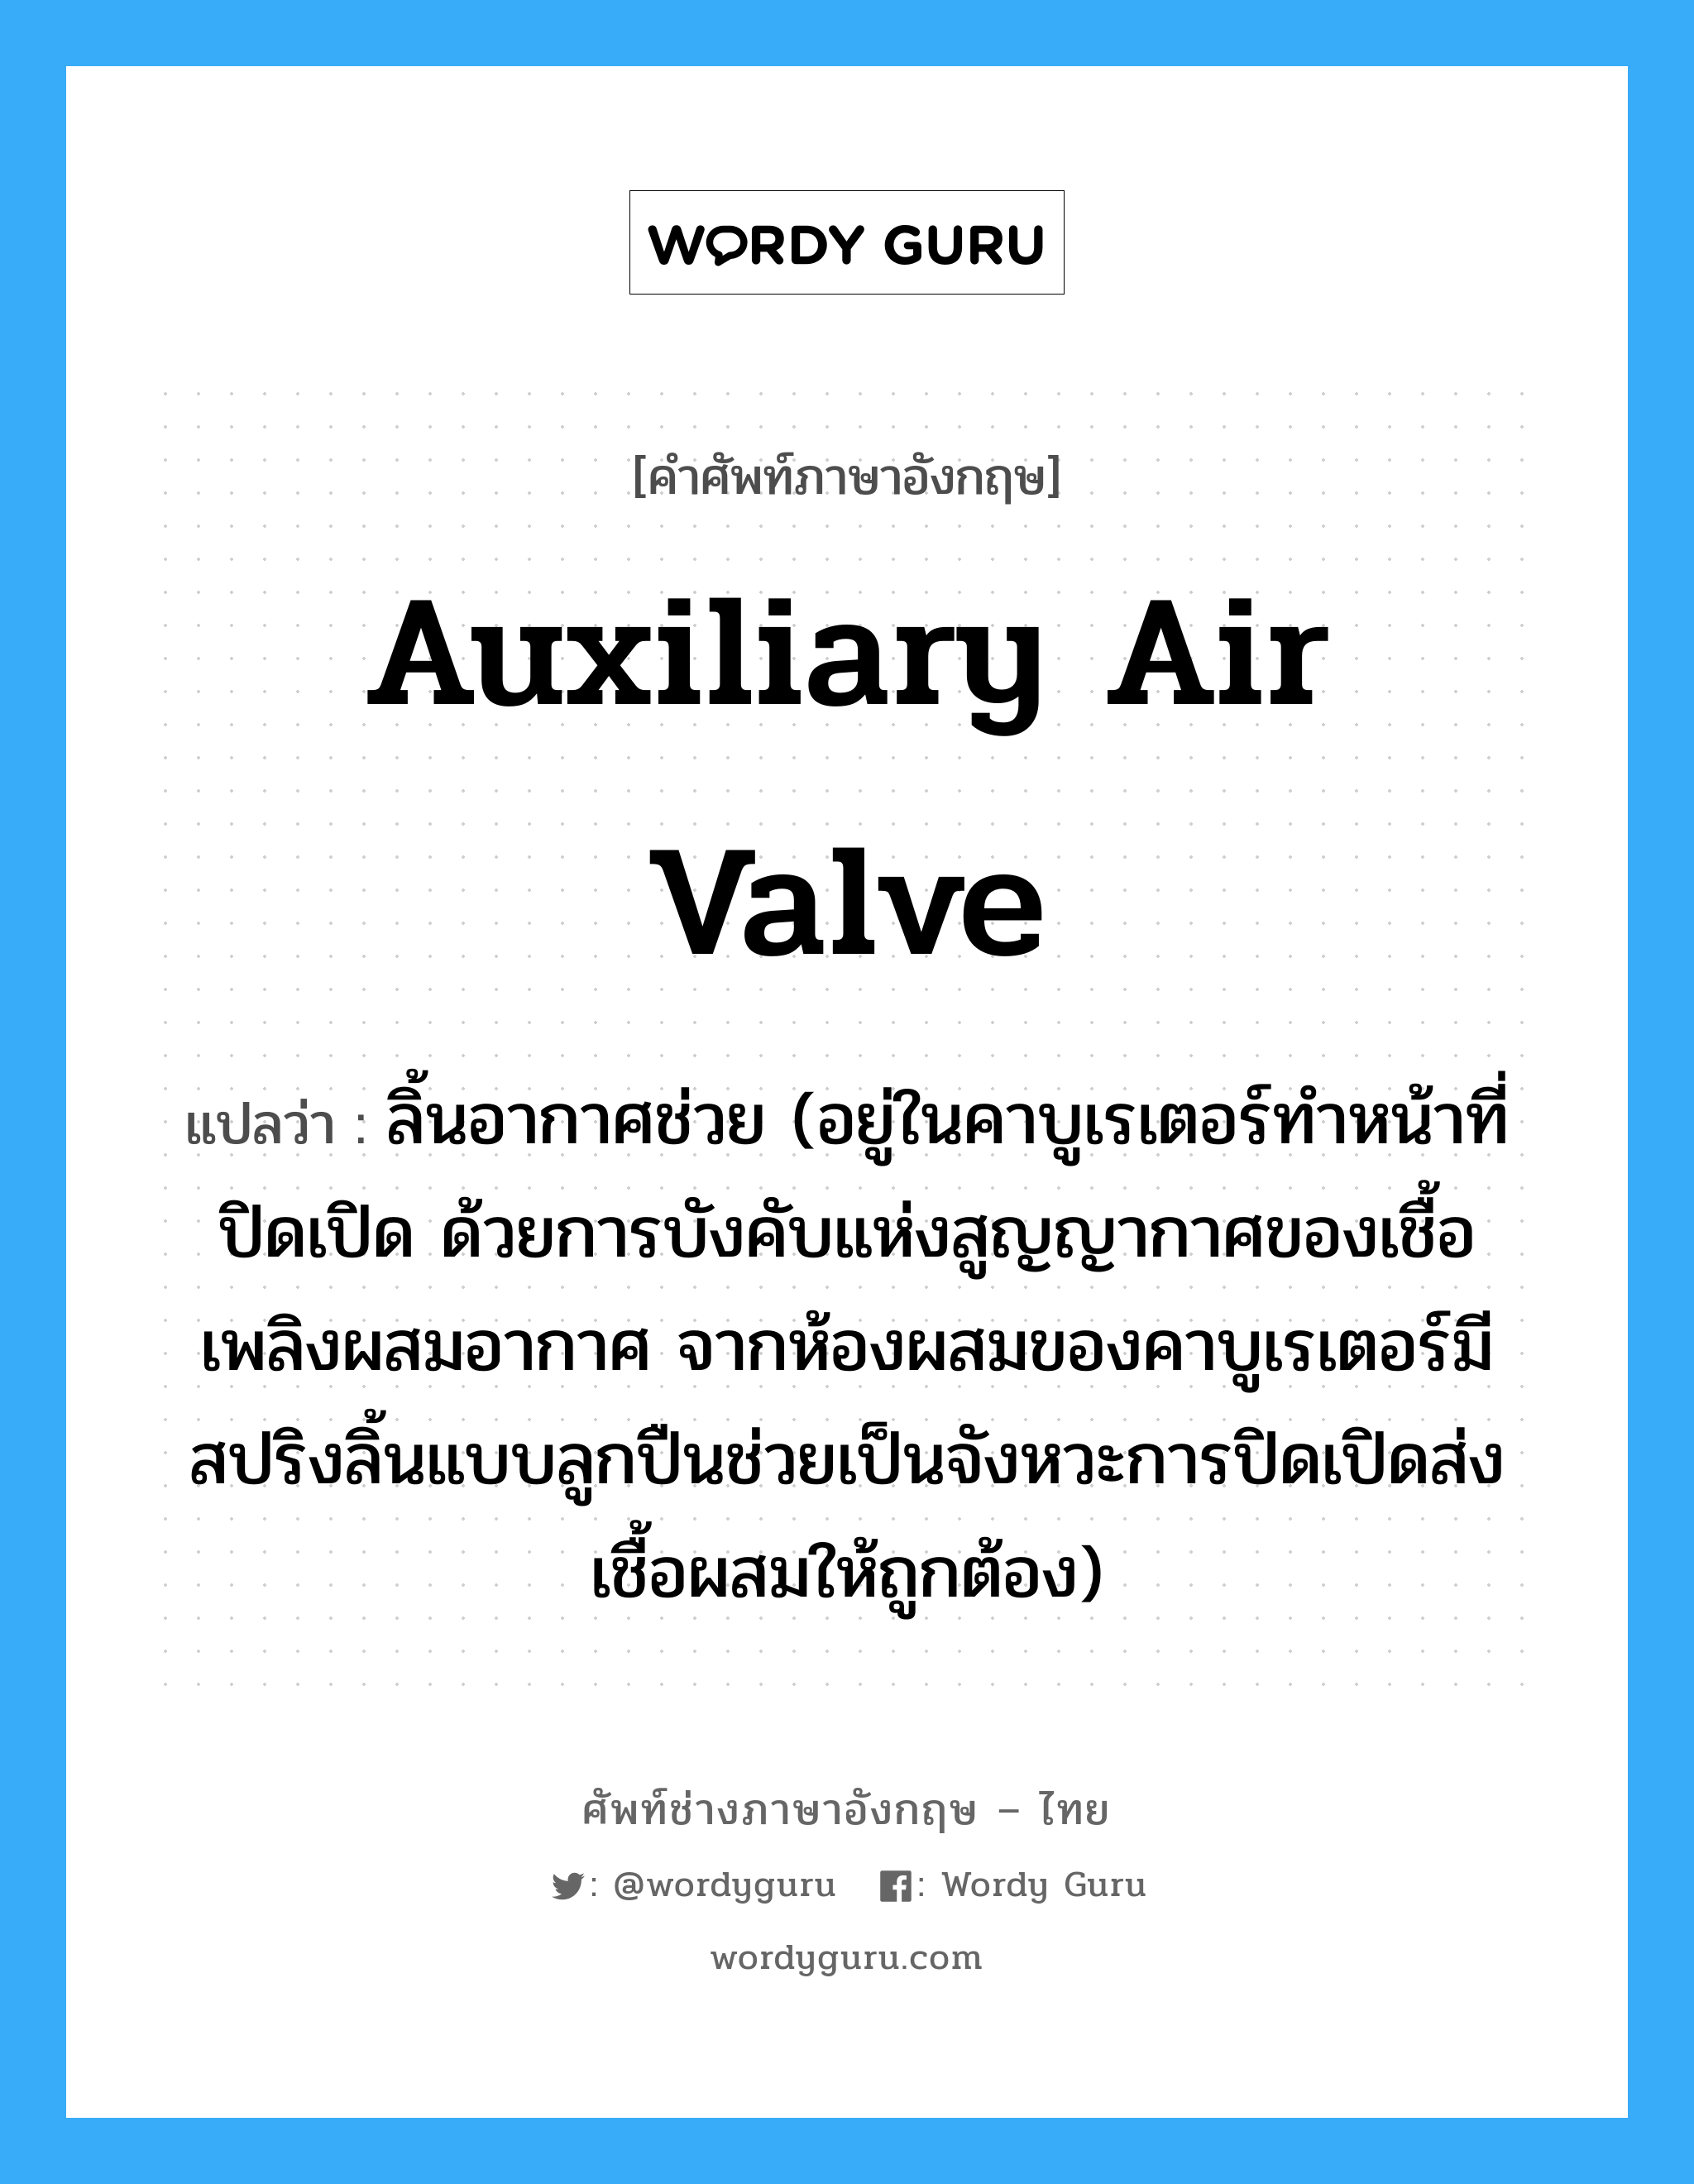 auxiliary air valve แปลว่า?, คำศัพท์ช่างภาษาอังกฤษ - ไทย auxiliary air valve คำศัพท์ภาษาอังกฤษ auxiliary air valve แปลว่า ลิ้นอากาศช่วย (อยู่ในคาบูเรเตอร์ทำหน้าที่ปิดเปิด ด้วยการบังคับแห่งสูญญากาศของเชื้อเพลิงผสมอากาศ จากห้องผสมของคาบูเรเตอร์มีสปริงลิ้นแบบลูกปืนช่วยเป็นจังหวะการปิดเปิดส่งเชื้อผสมให้ถูกต้อง)